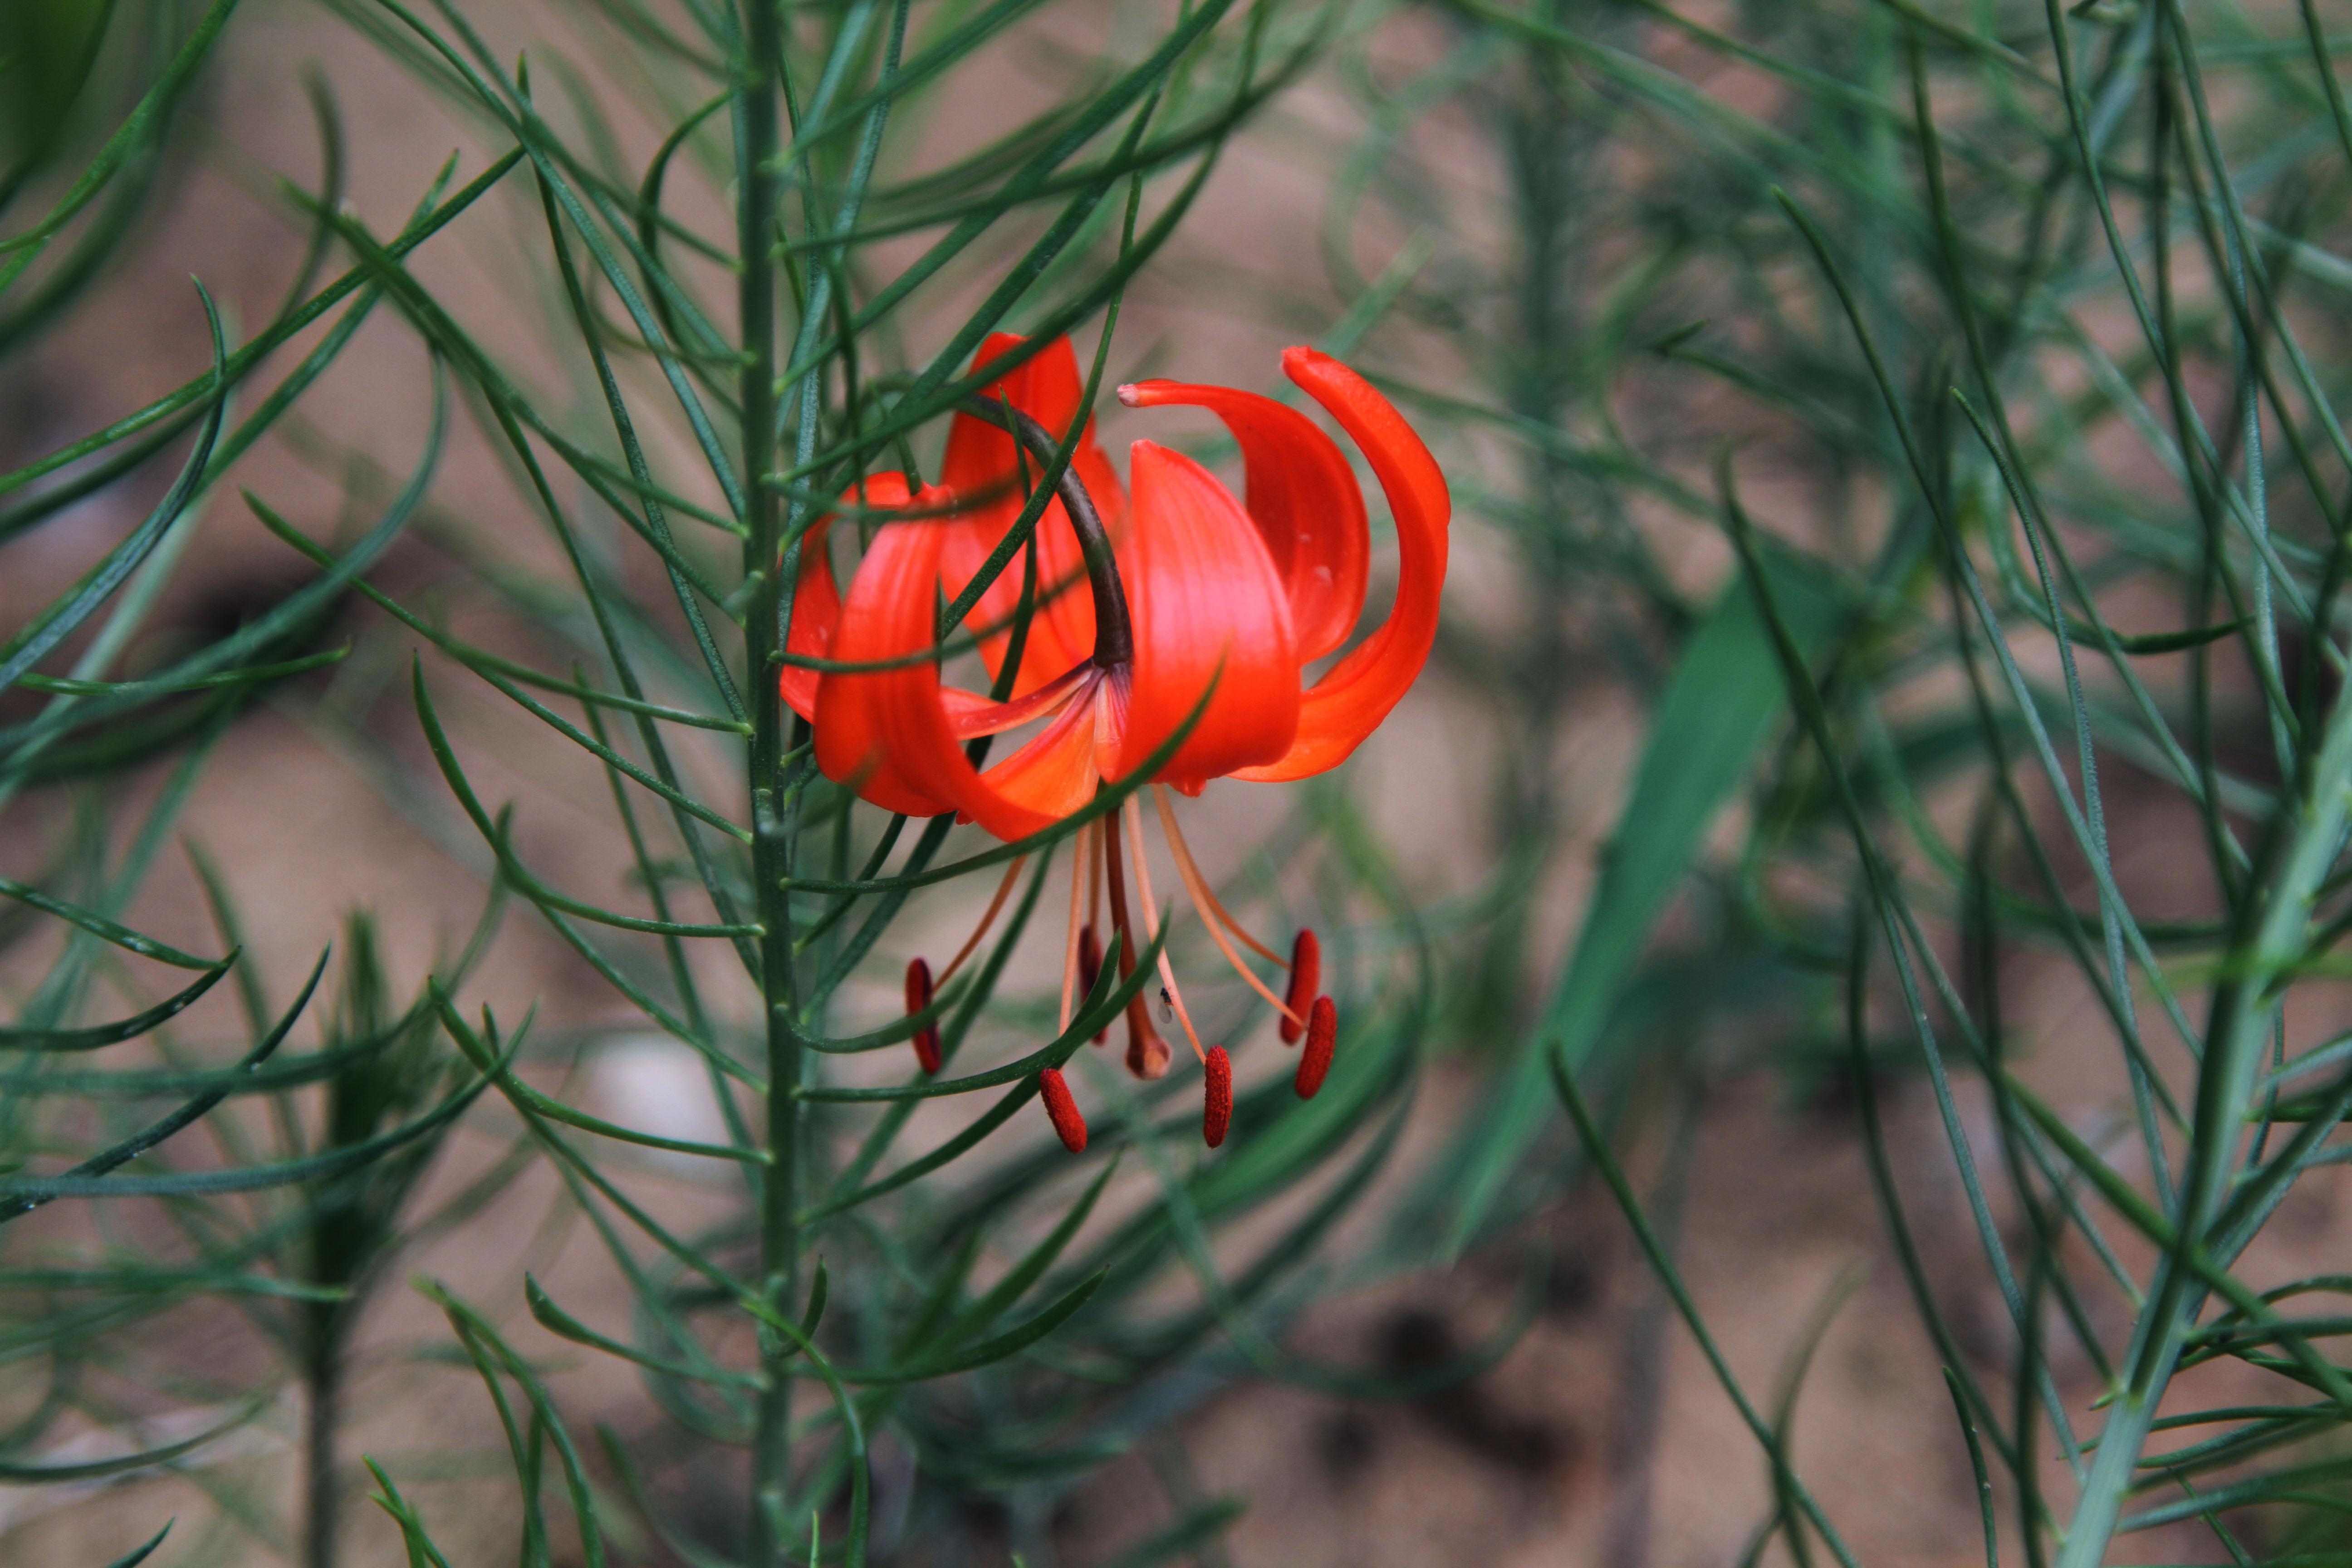 山丹丹花单生或数朵排成总状花序,鲜红色,通常无斑点,有时有少数.